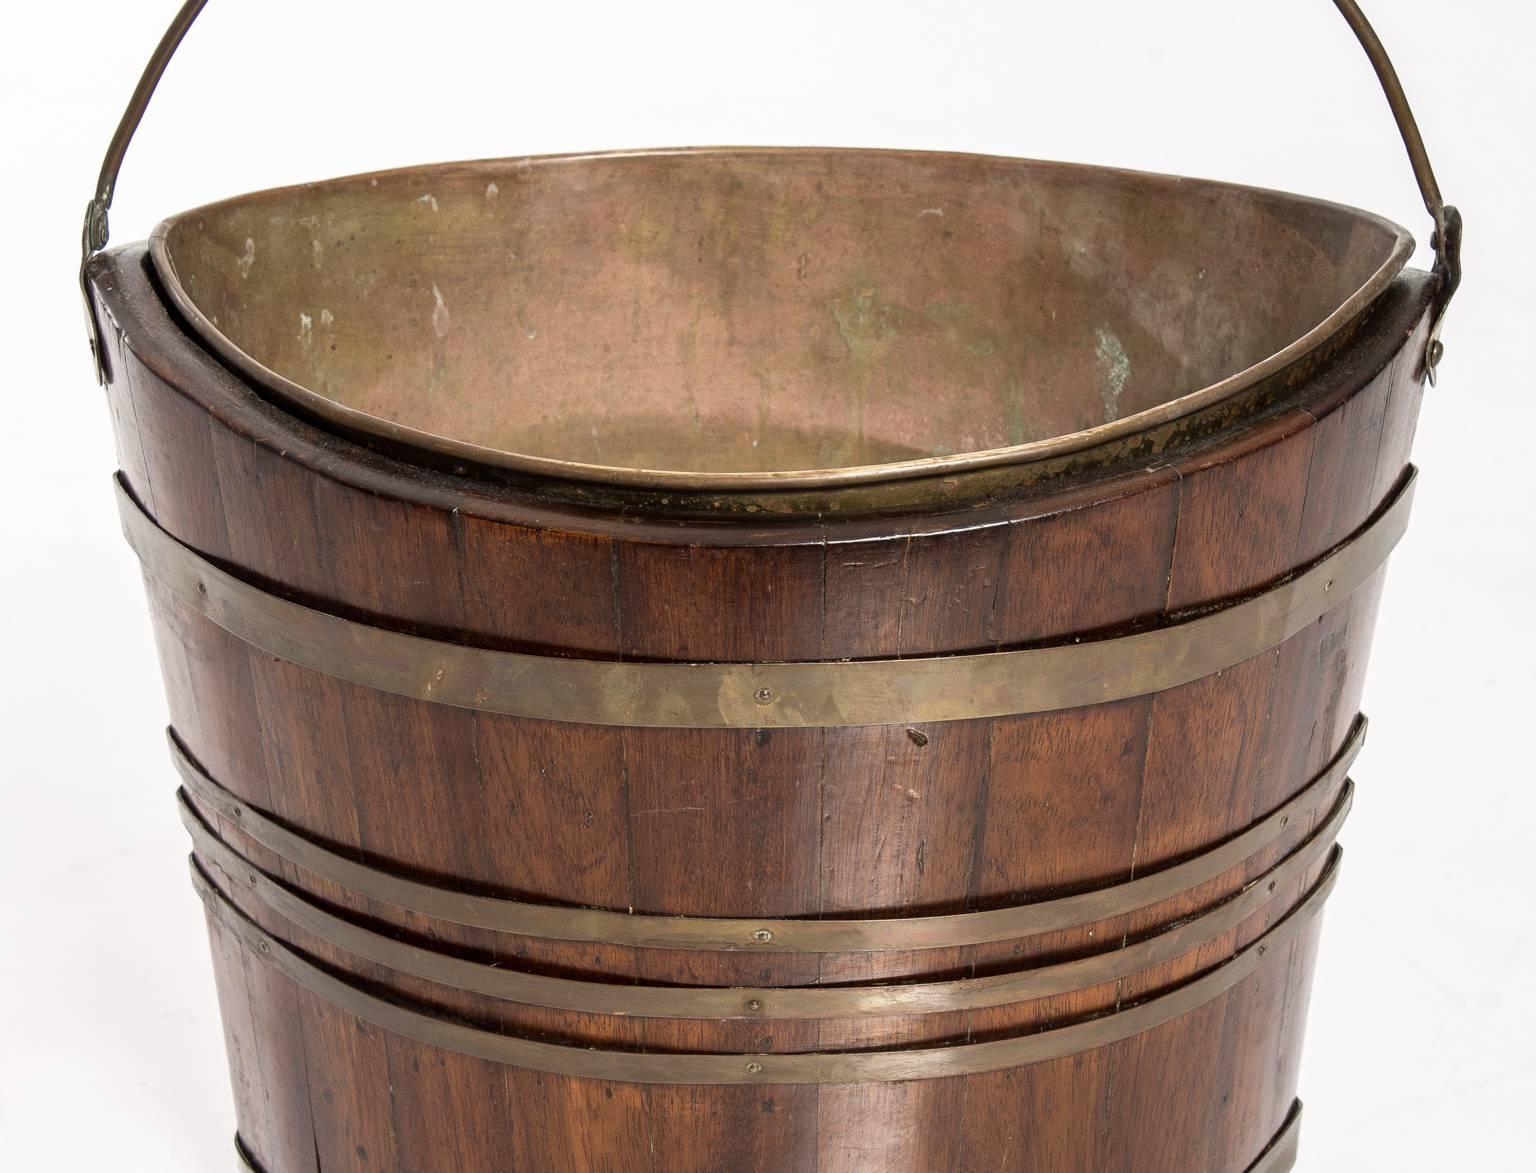 19th Century Peat Bucket